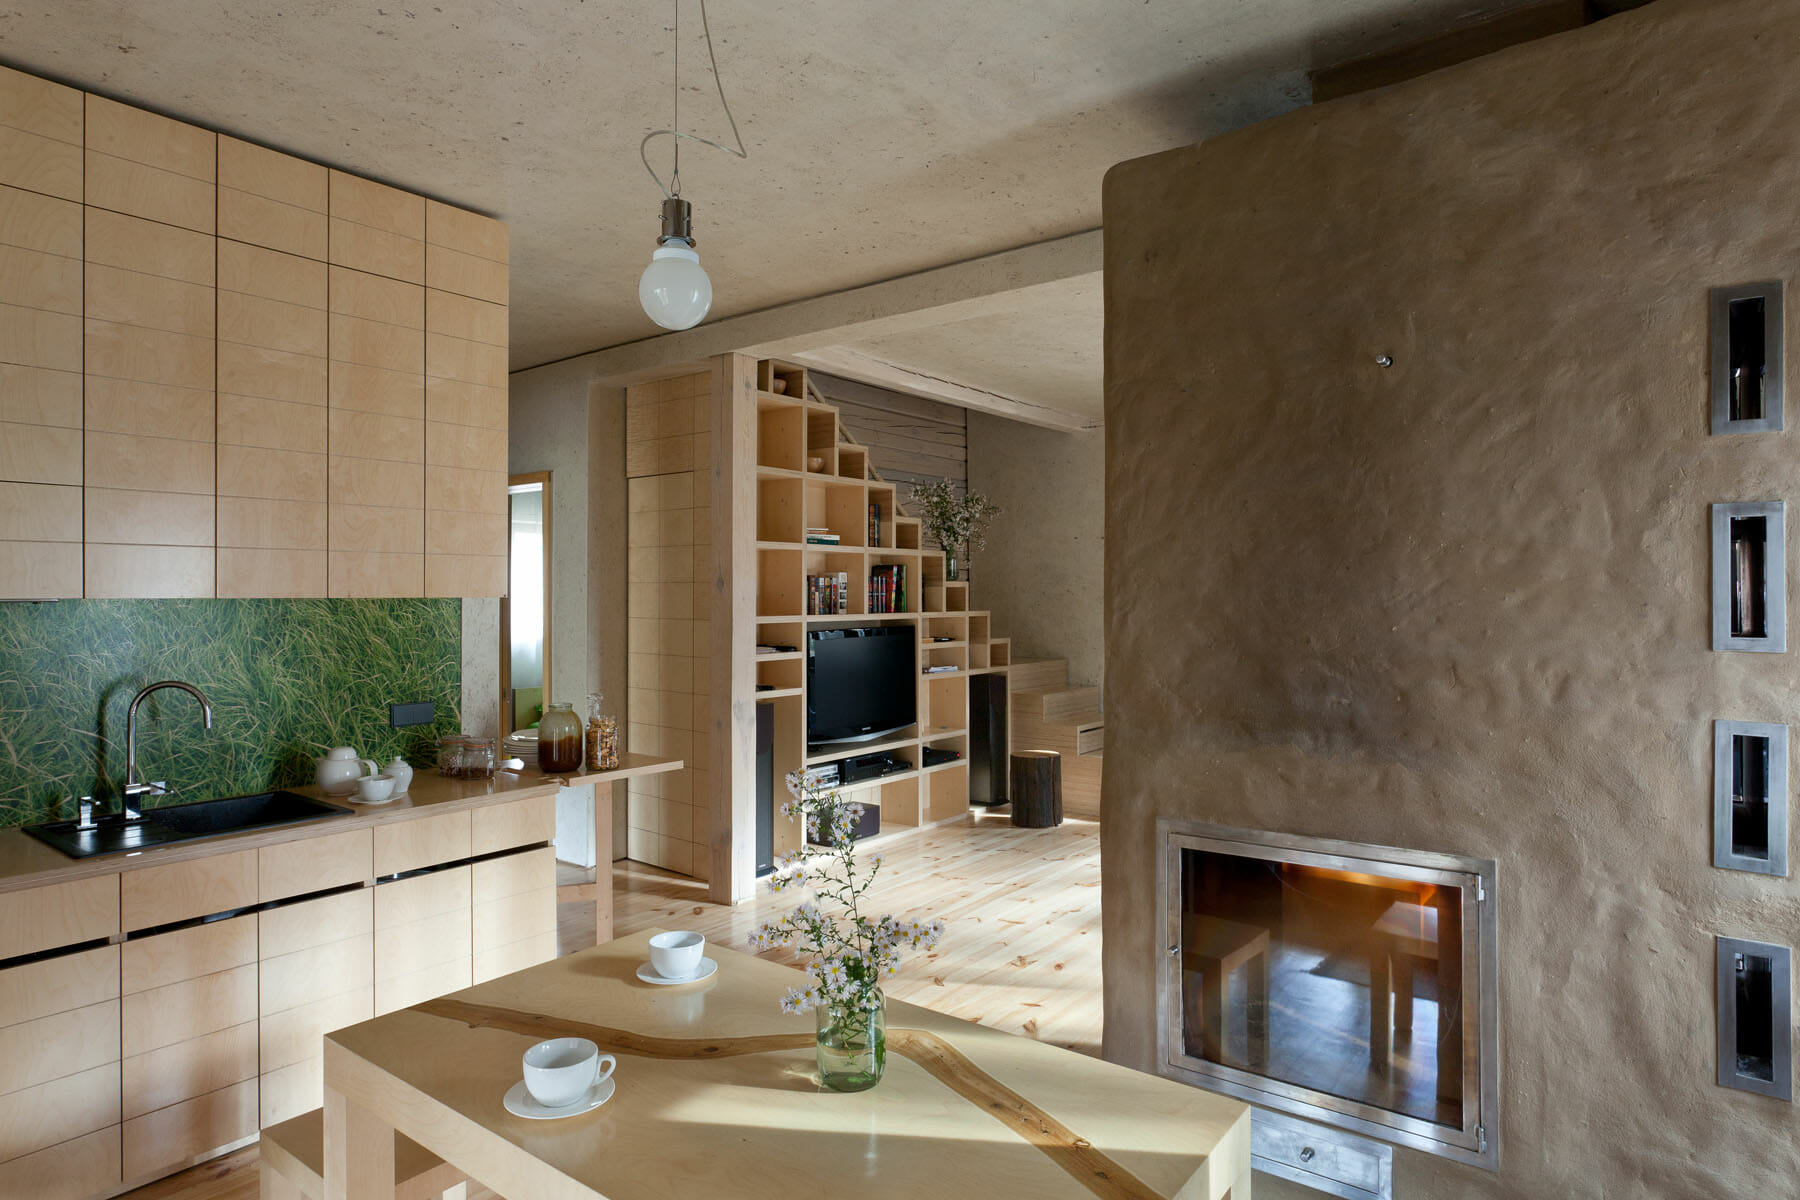 12 Best Creative Storage Ideas for an Organized Home - Decorilla Online  Interior Design